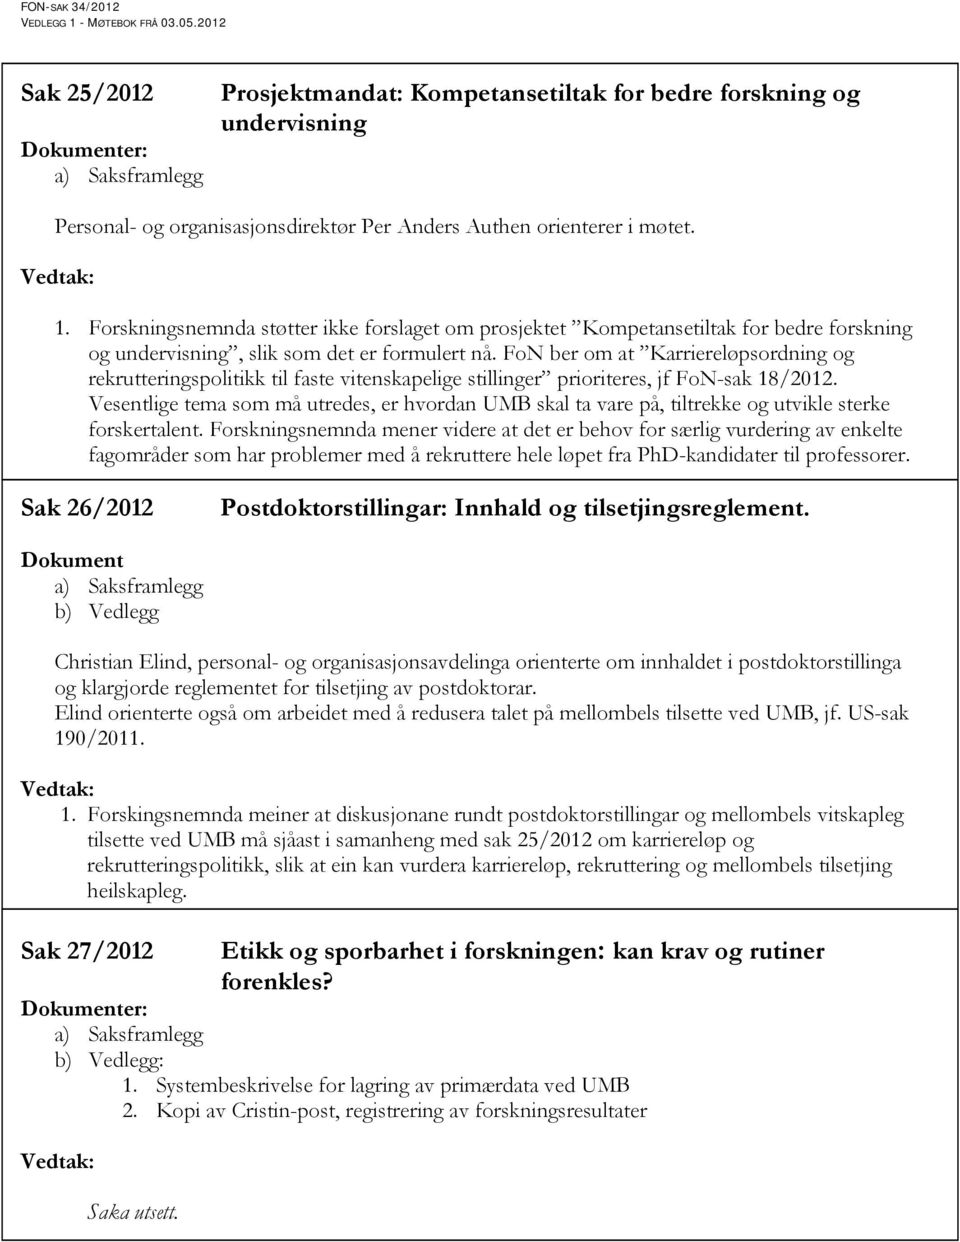 FoN ber om at Karriereløpsordning og rekrutteringspolitikk til faste vitenskapelige stillinger prioriteres, jf FoN-sak 18/2012.